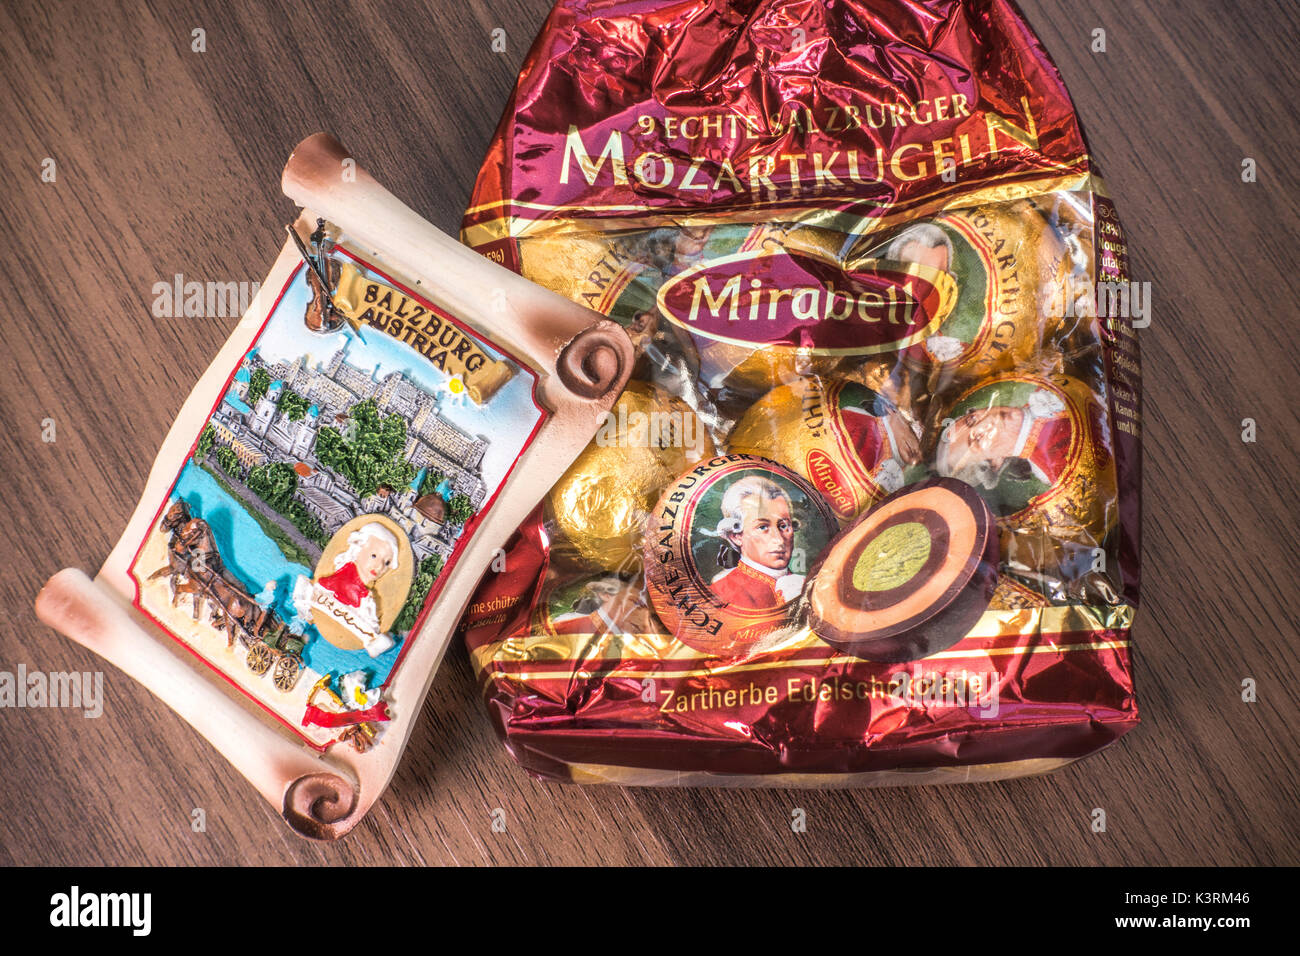 Un souvenir di Salisburgo a fianco di un pacco di Mirabell Mozartkugen cioccolatino Mozart palle - prodotta nello spirito della ricetta originale di Salisburgo. Foto Stock